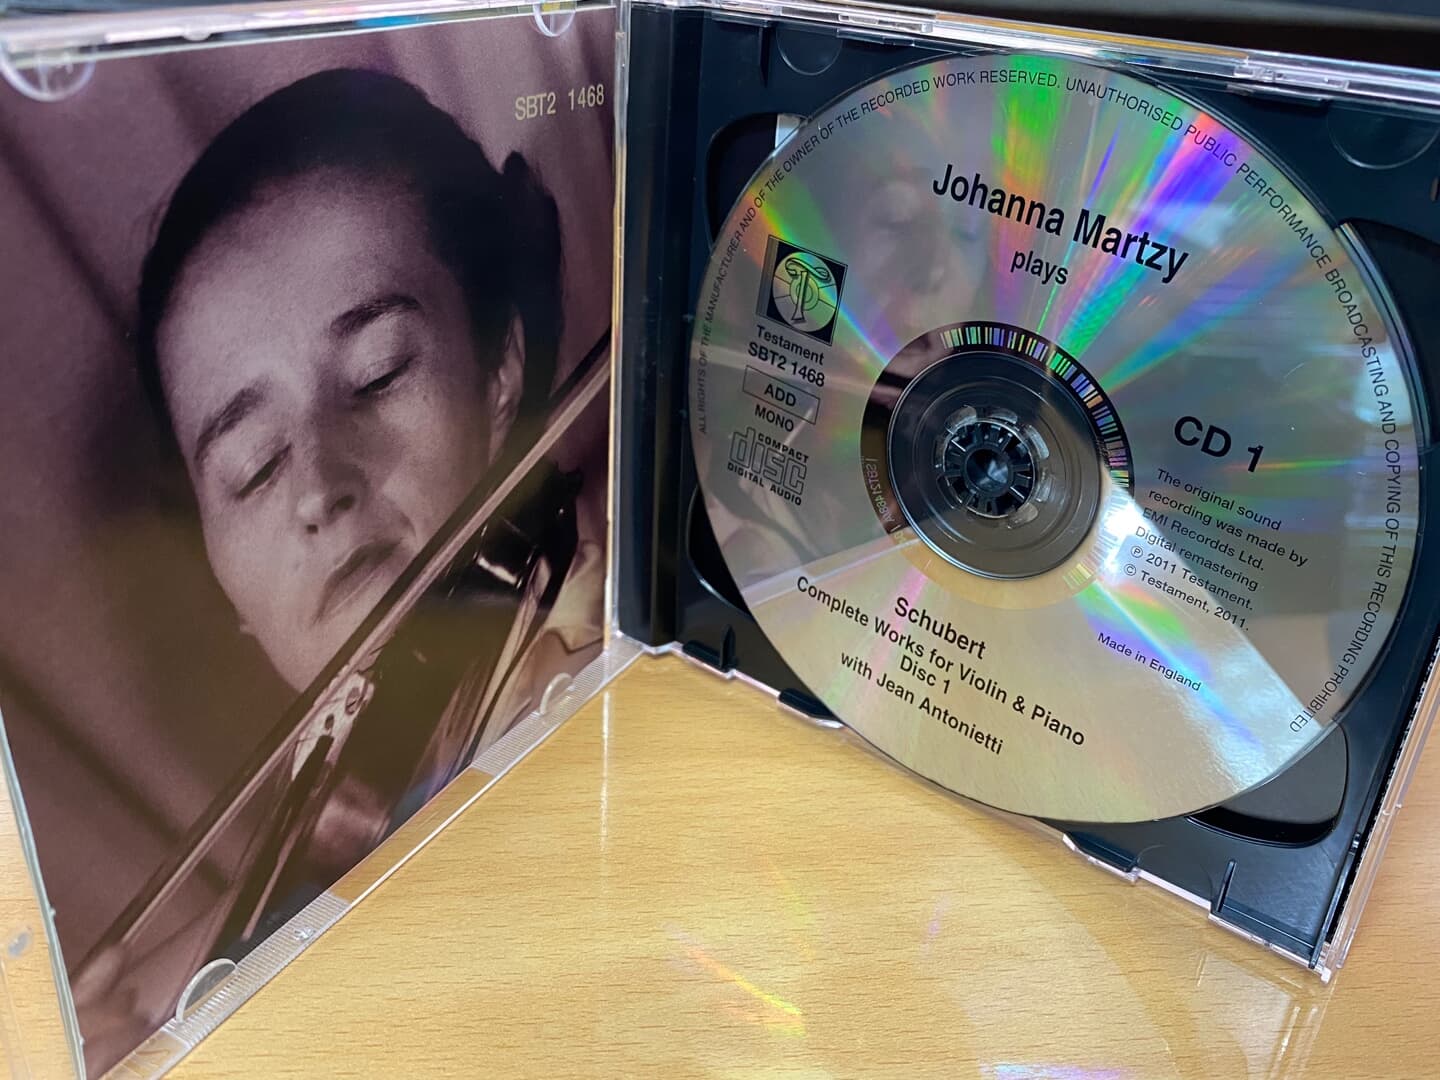 요한나 마르치 - Johanna Martzy - Schubert Complete Works For Violin & Piano 2Cds [U.K발매]